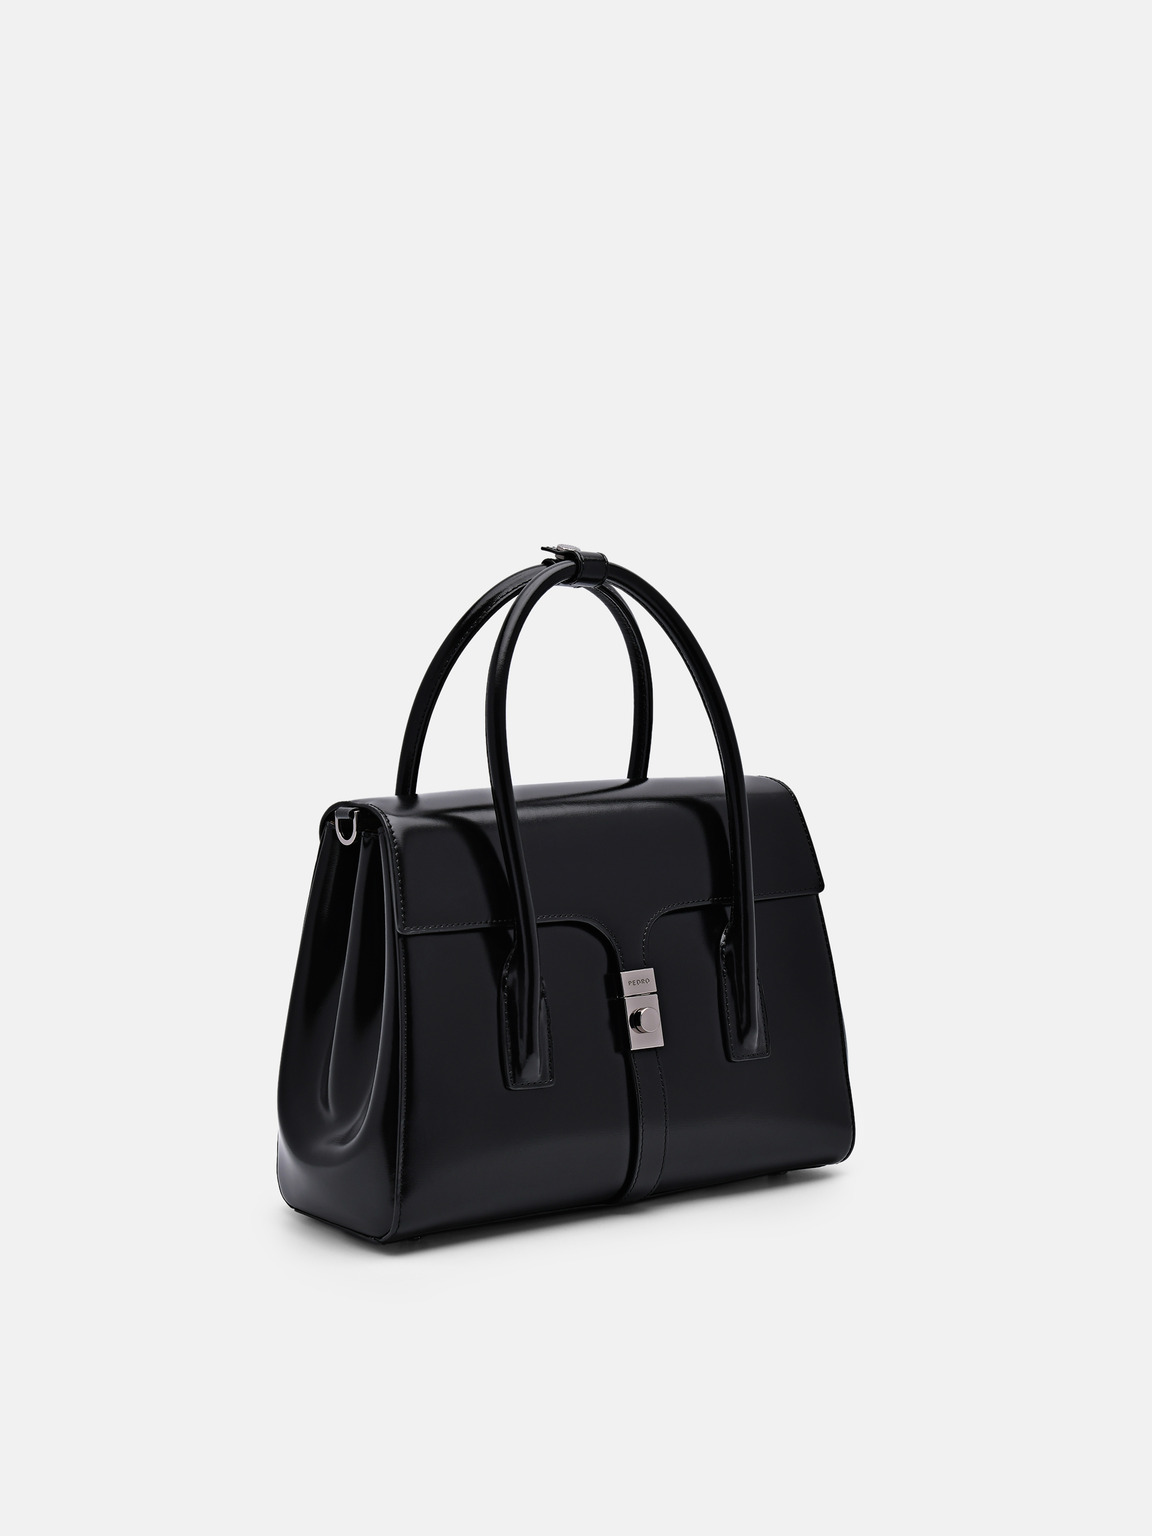 PEDRO Studio Farida Leather Handbag, Black